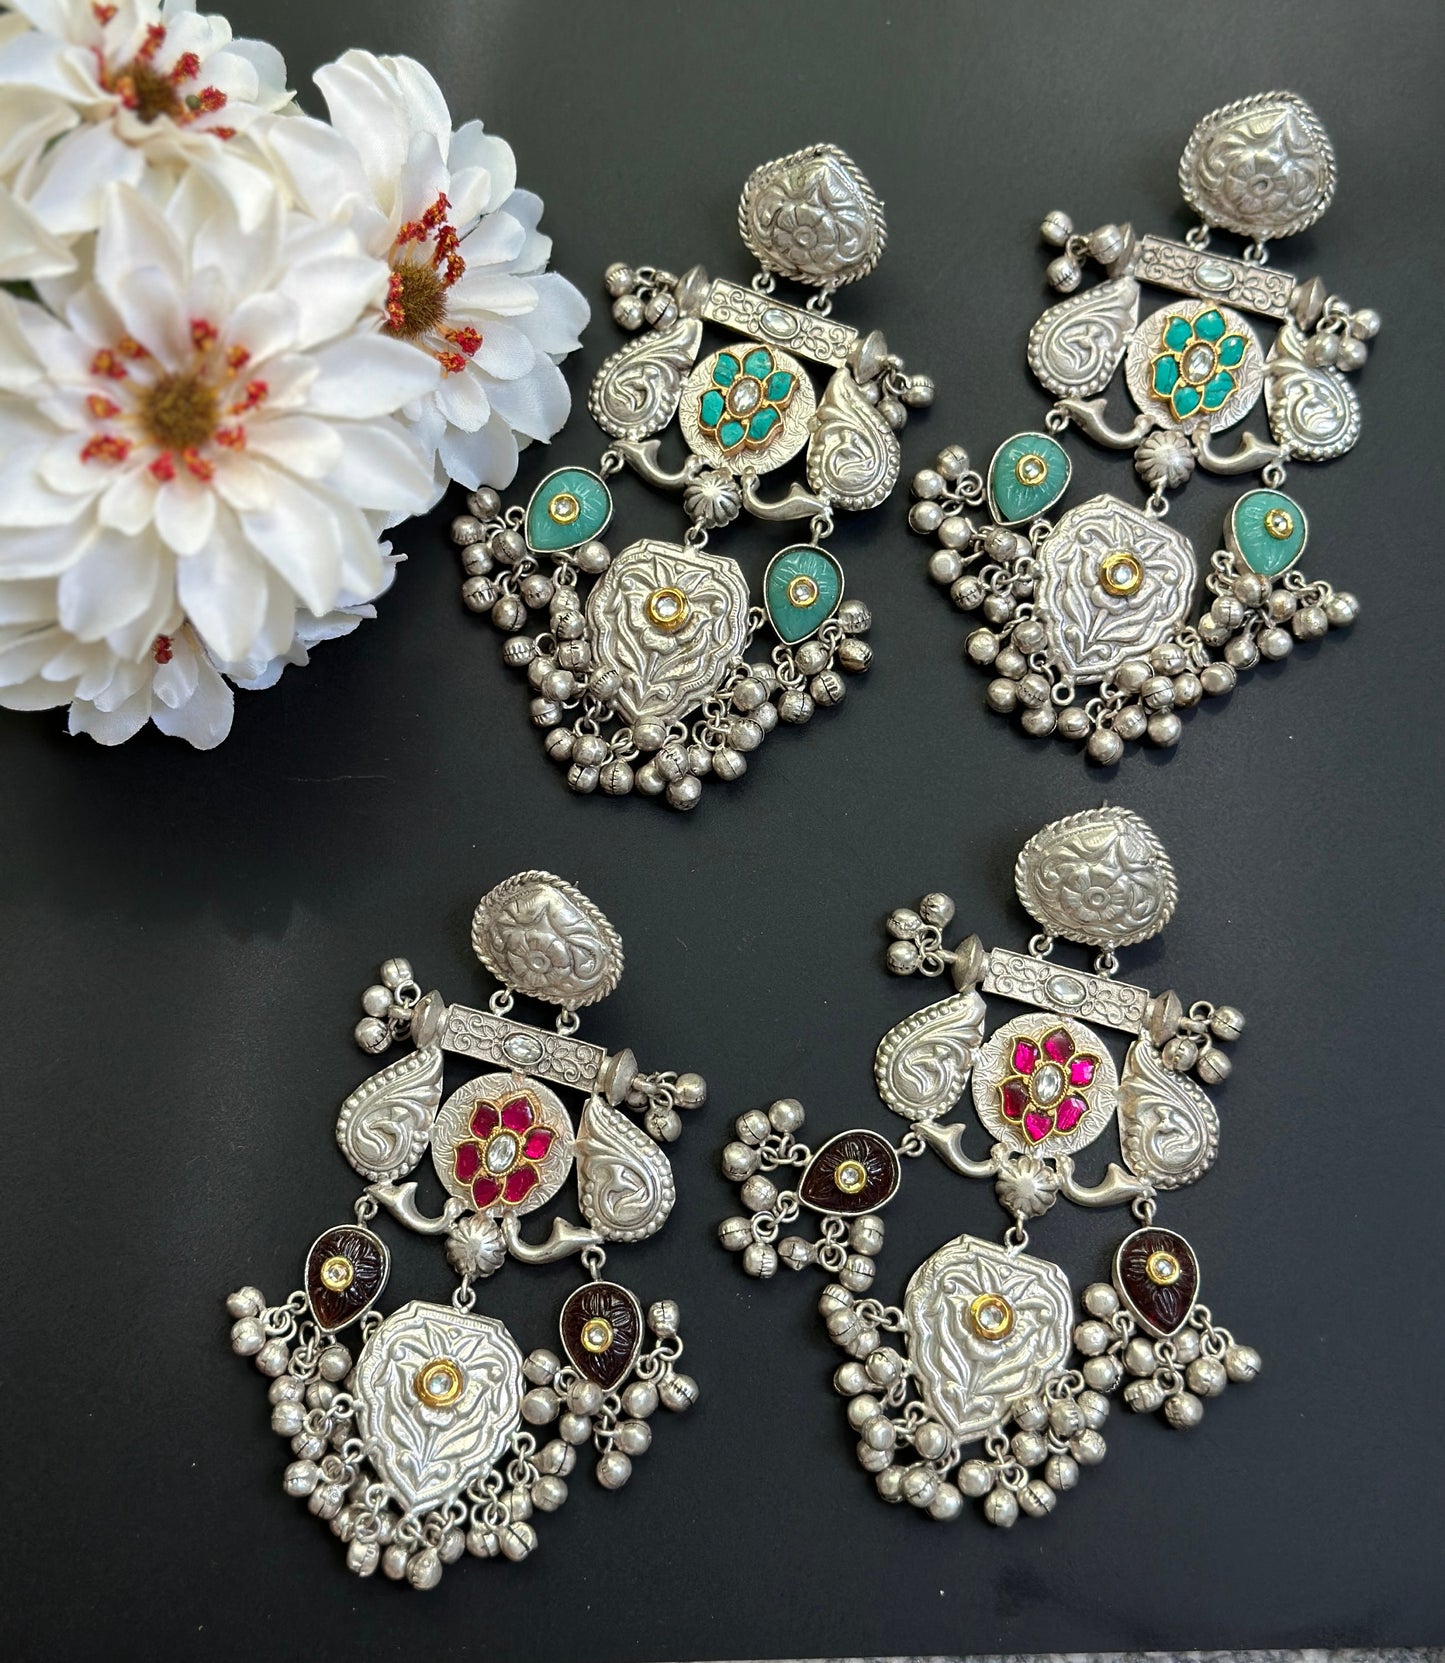 Oxidized silver earrings/oversized jhumka/Indian silver earrings/flower earring ghungroo/antique vintage silver earring/pink green earring